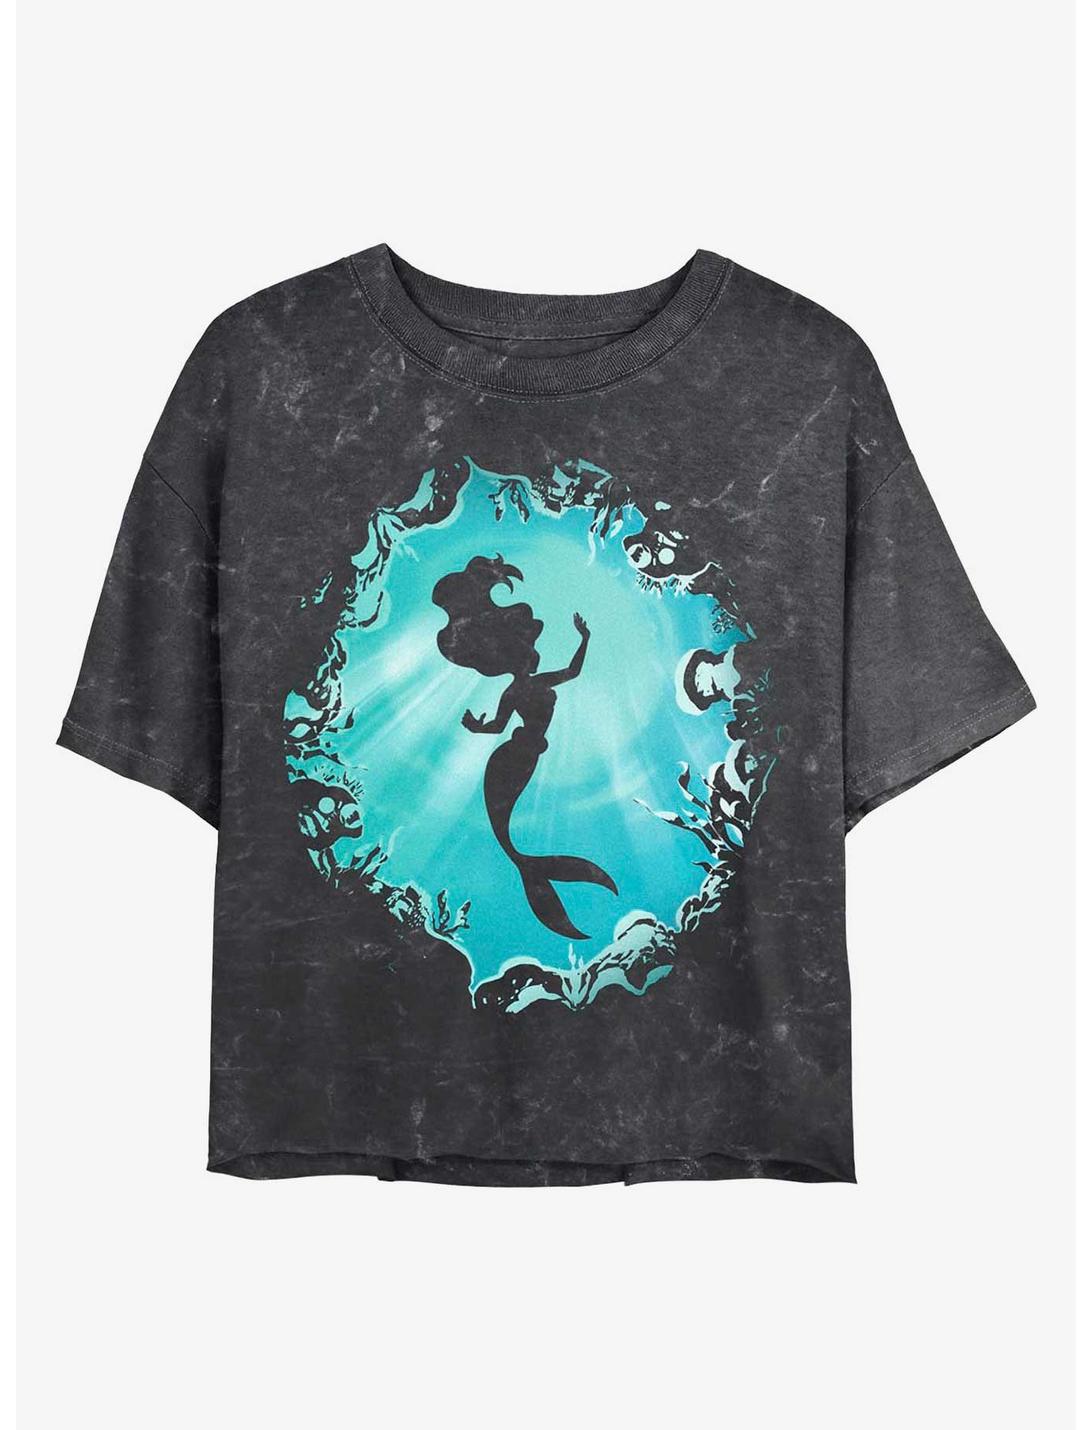 Disney Princesses Ariel's Grotto Mineral Wash Crop Womens T-Shirt, BLACK, hi-res